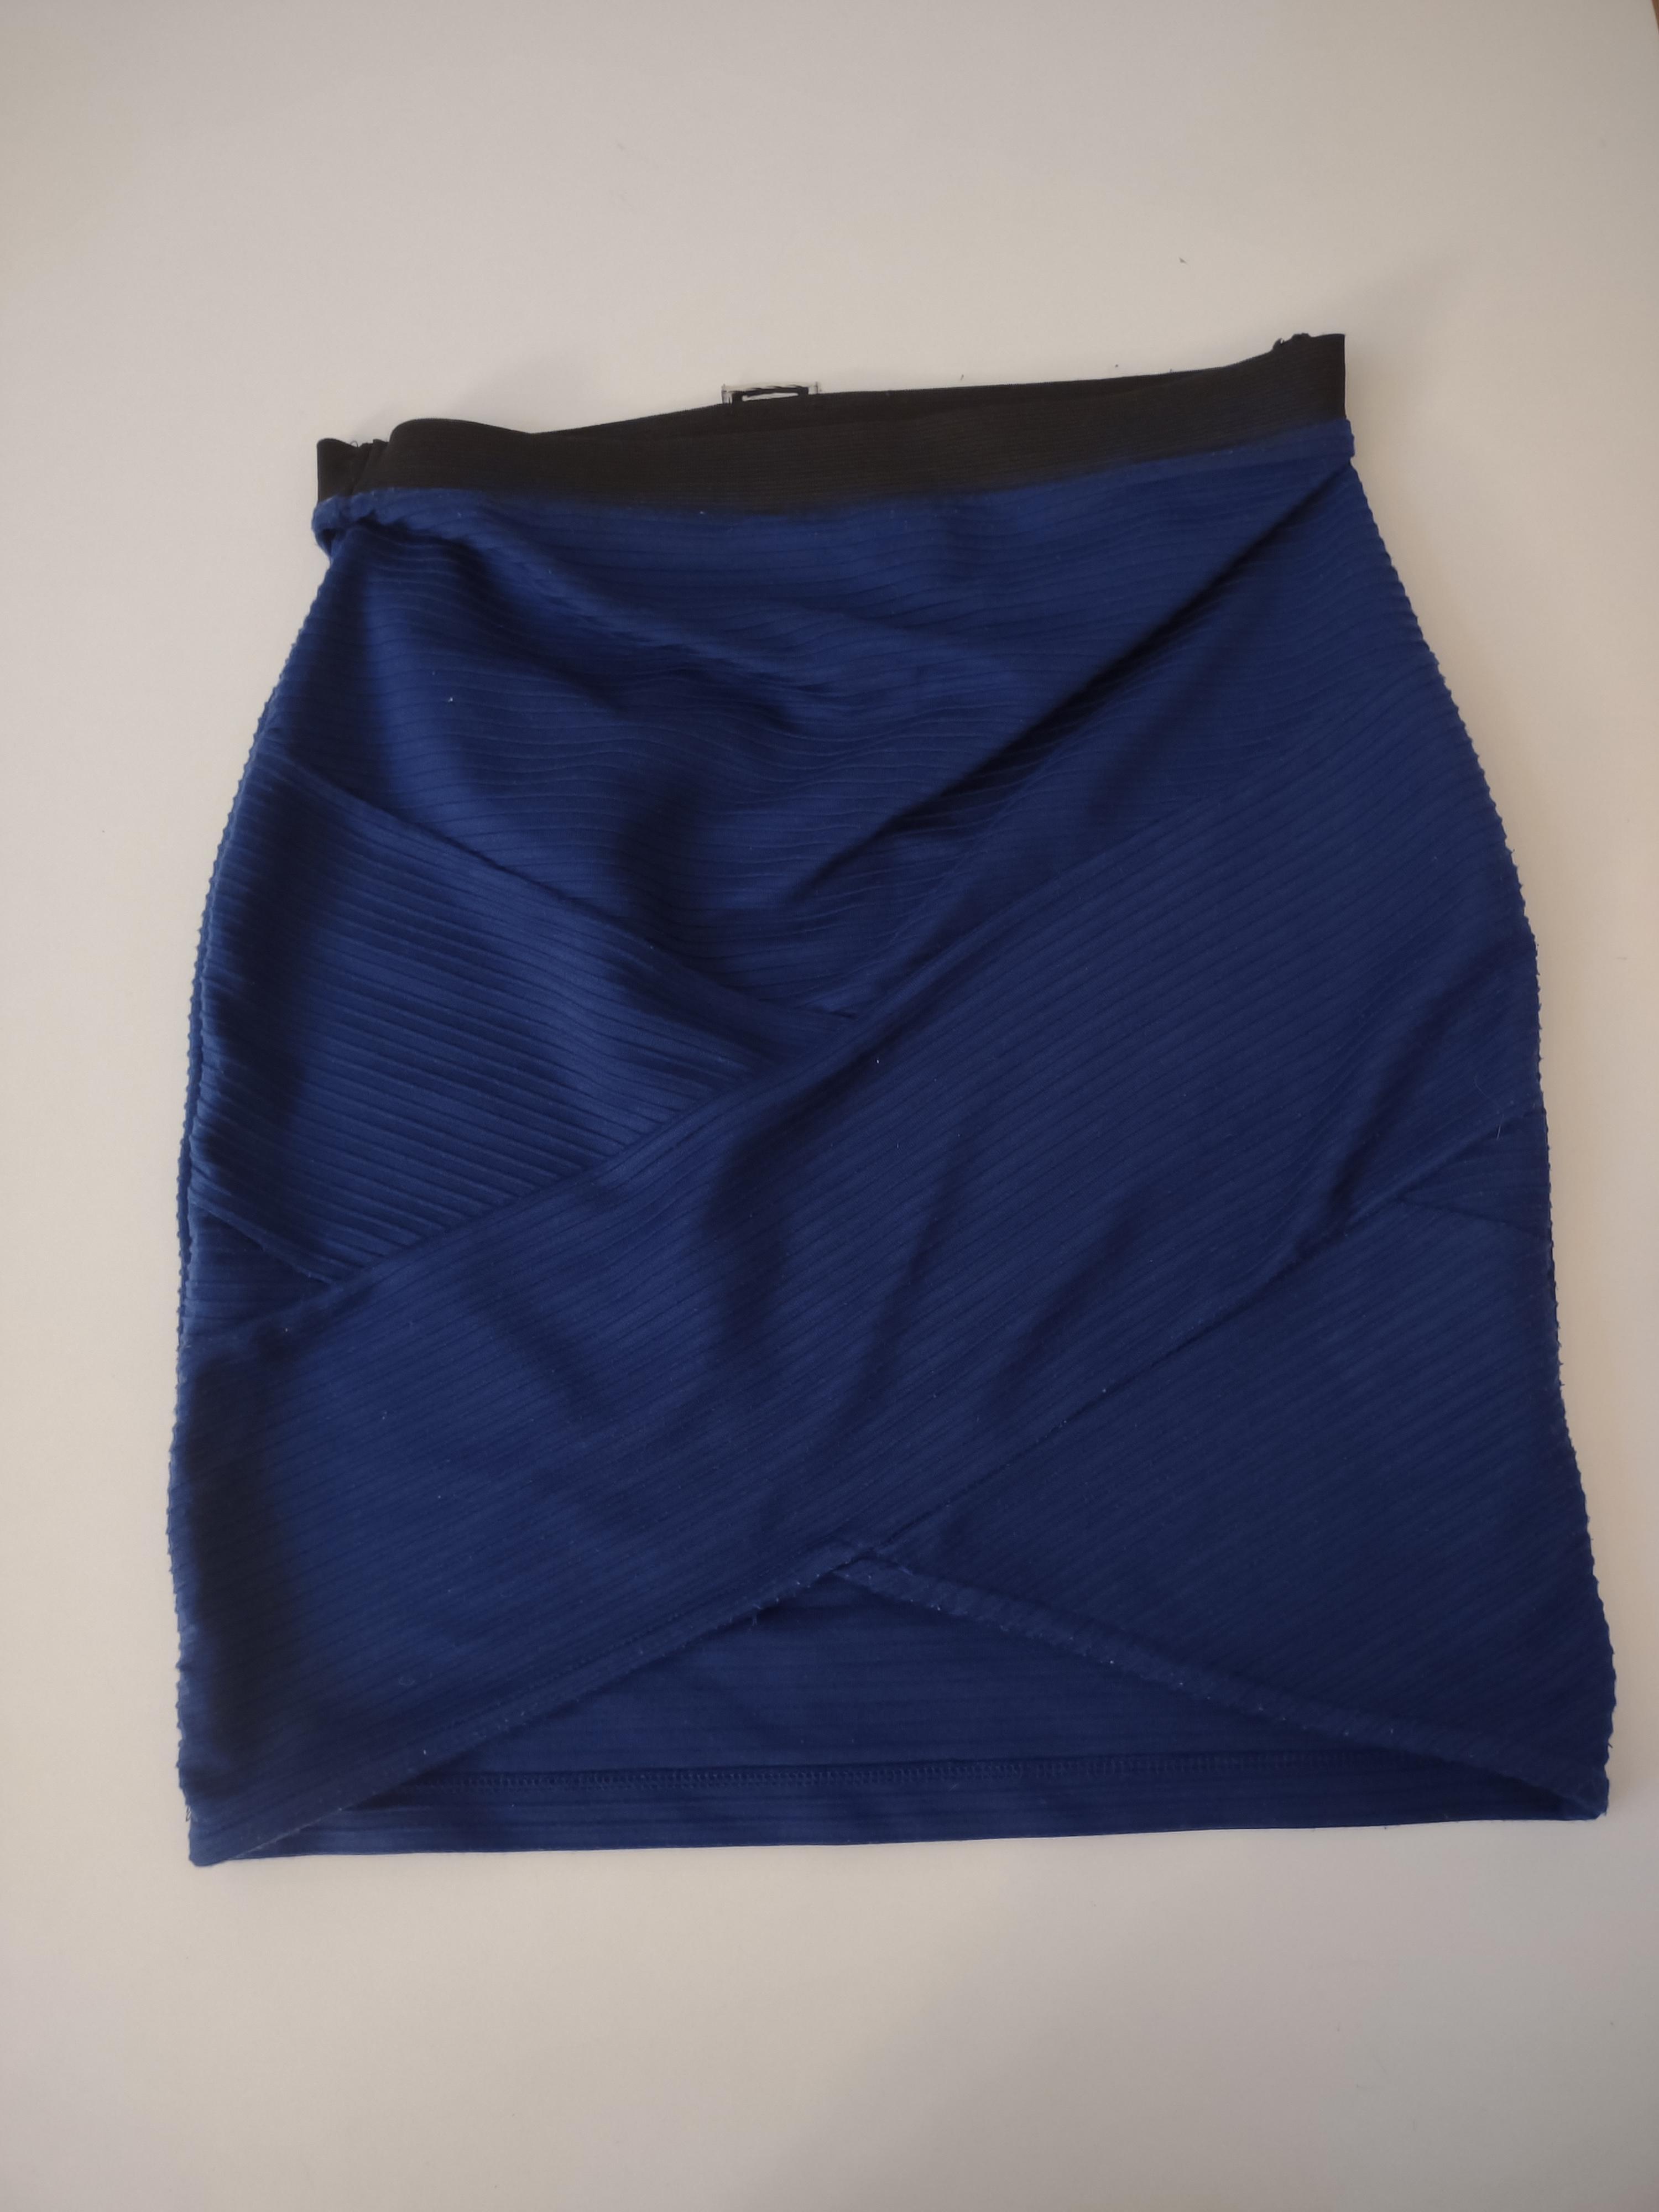 troc de troc jupe pimkie bleu 34-36 (pas d'étiquette taille) image 1